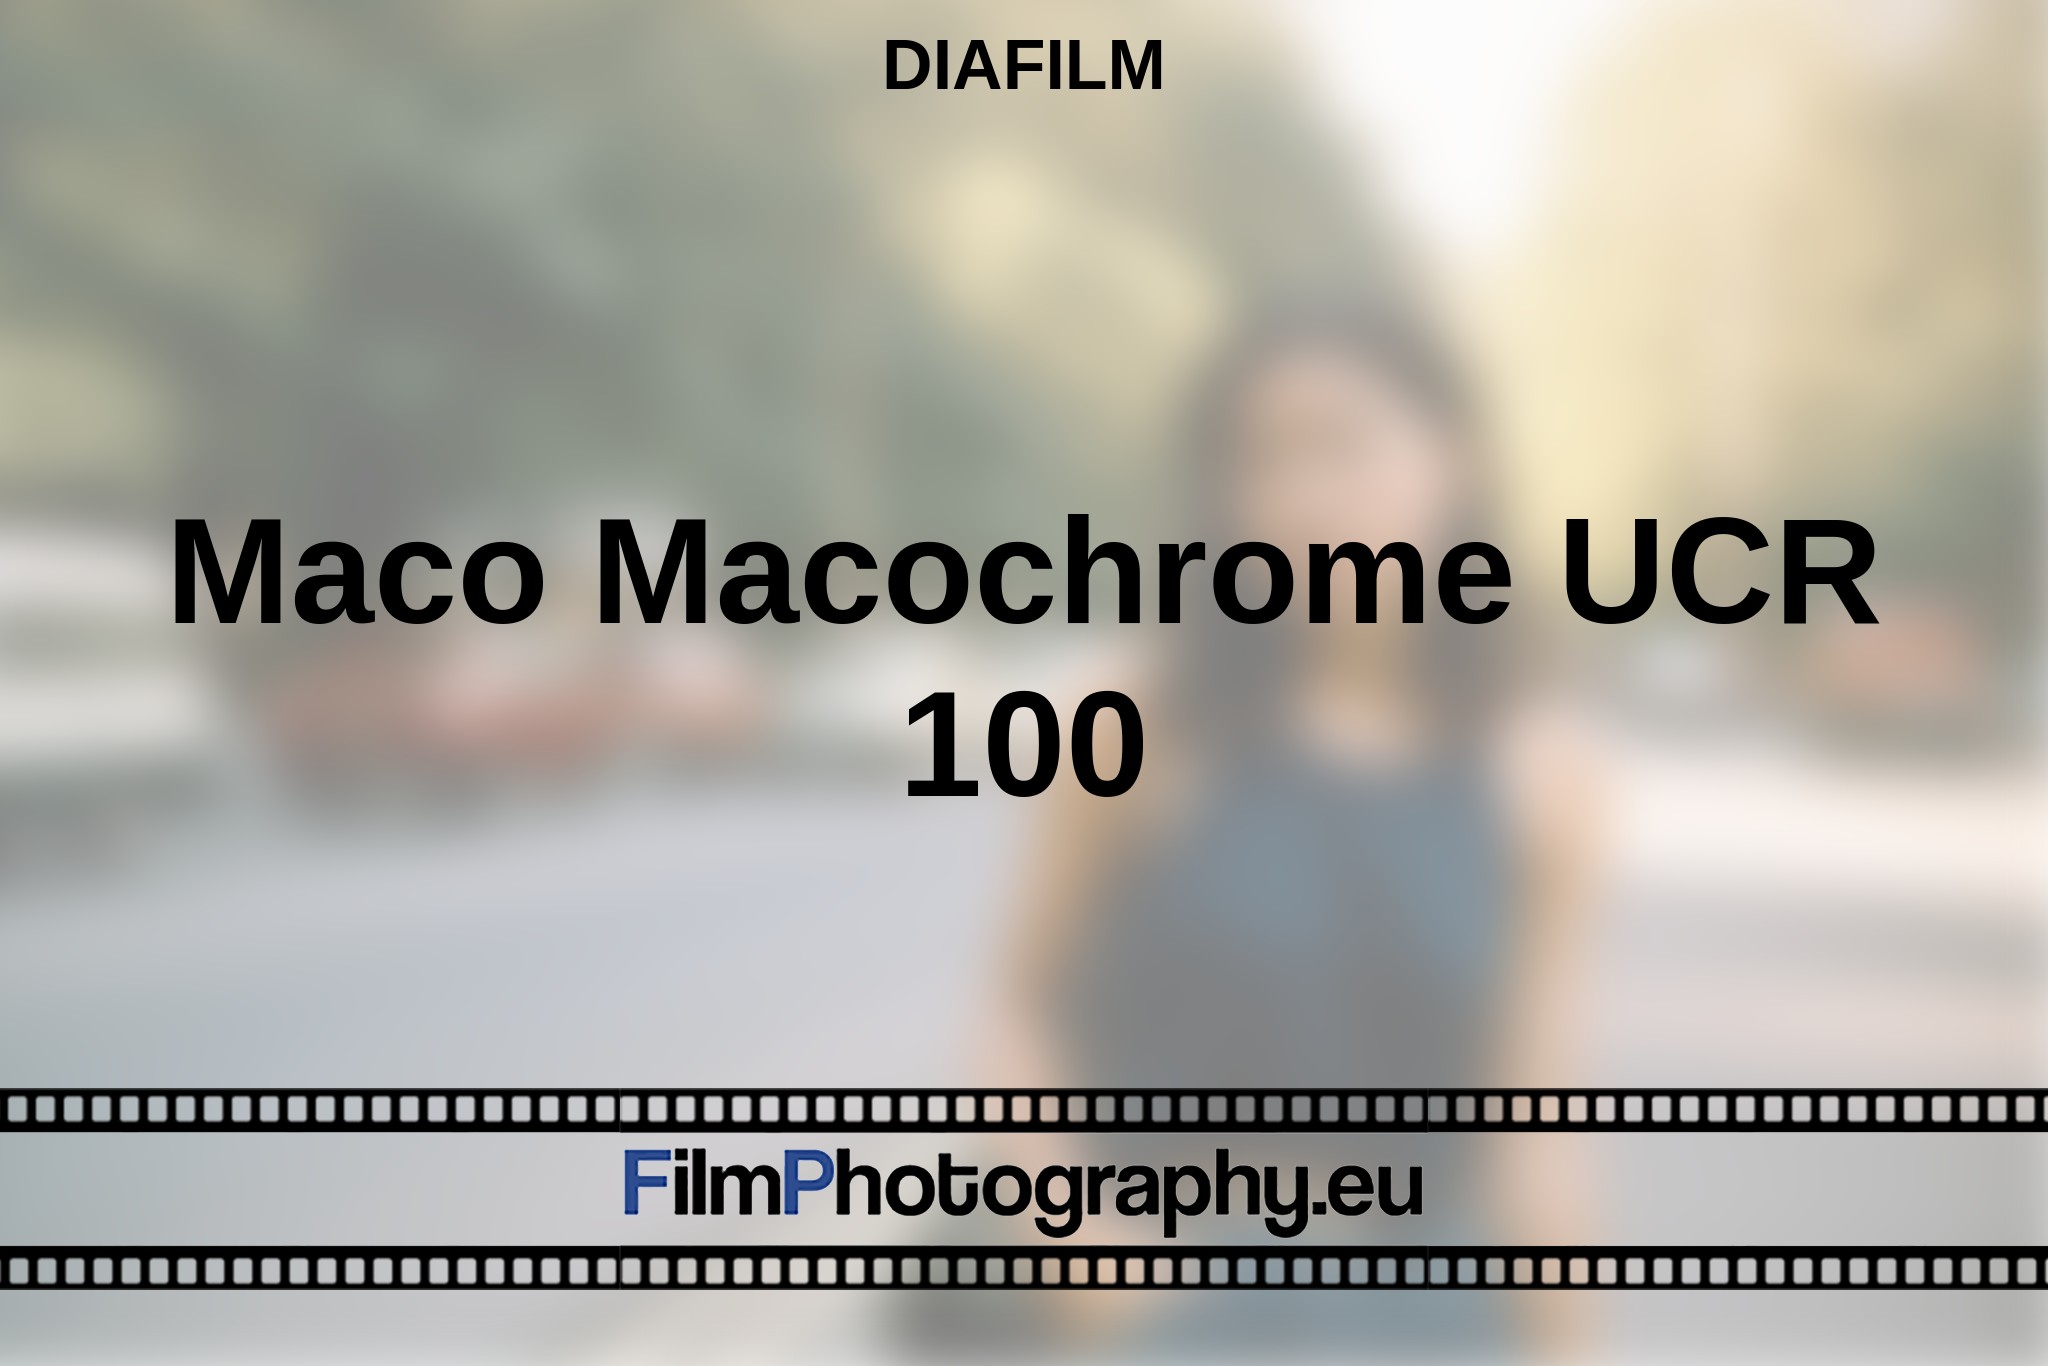 maco-macochrome-ucr-100-diafilm-bnv.jpg